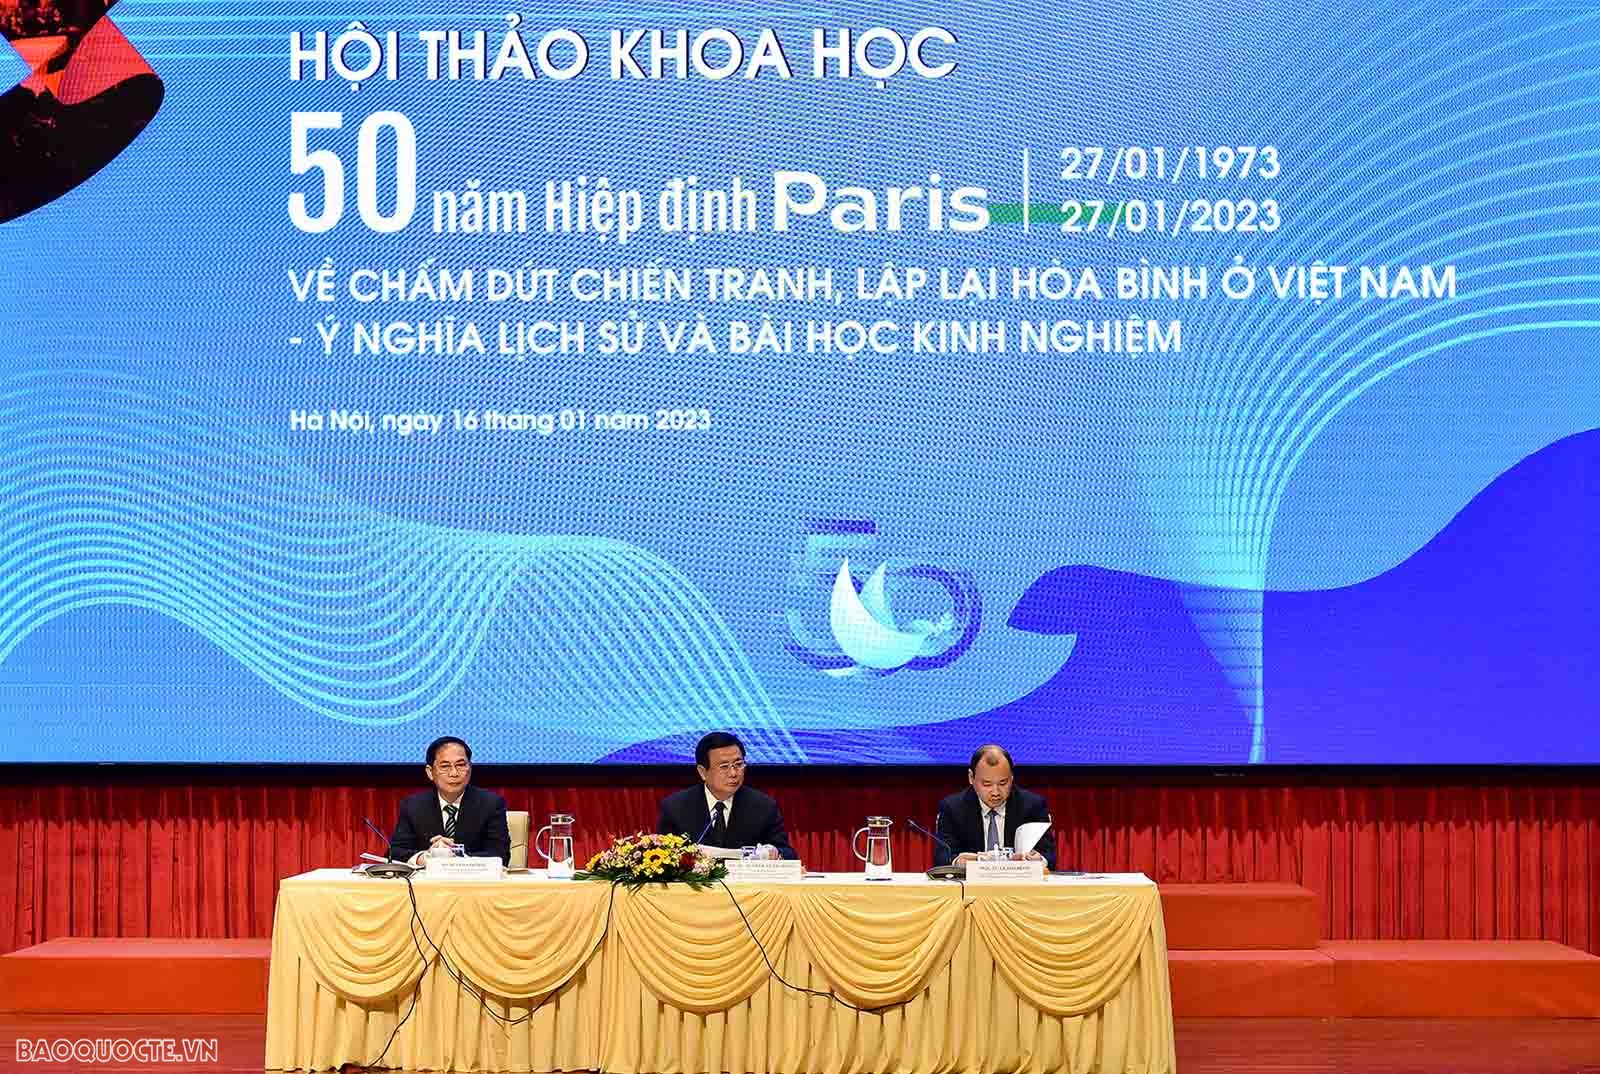 50 năm Hiệp định Paris: Bước ngoặt lịch sử, mốc son chói lọi của ngoại giao Việt Nam